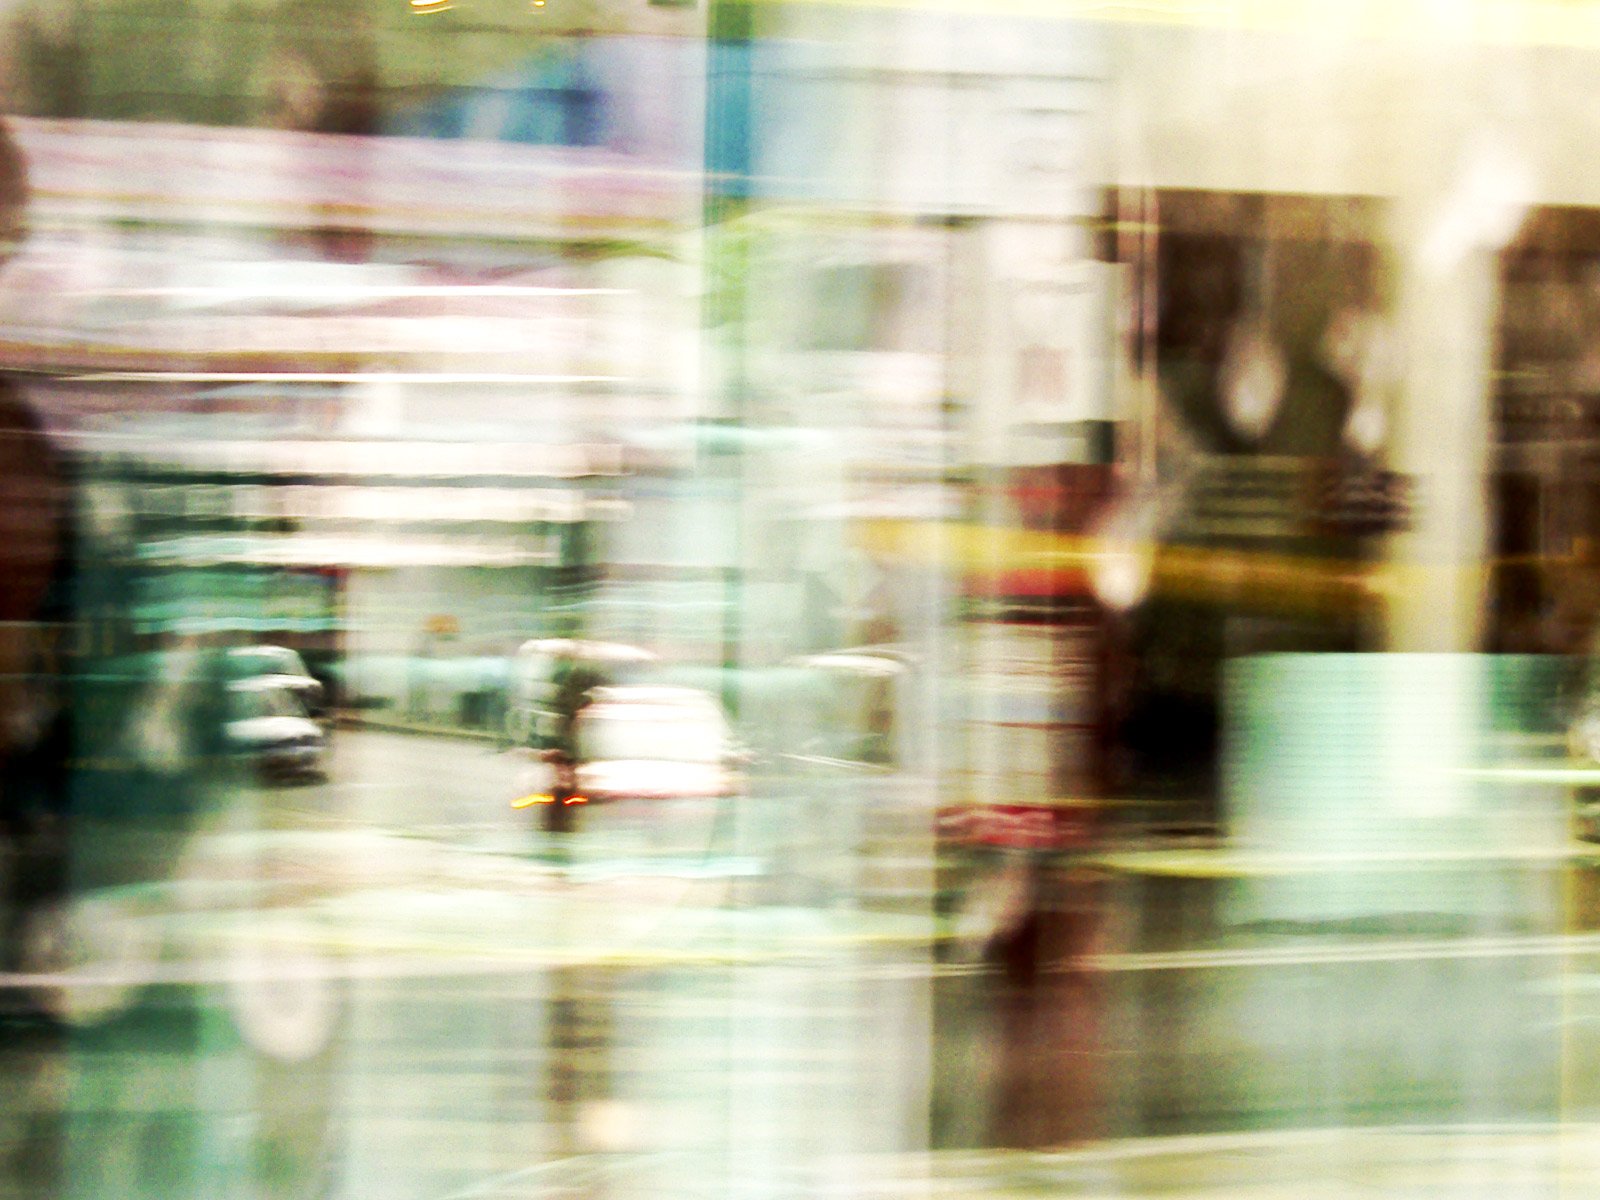 a blurry po of a city street, taken from inside a shop window